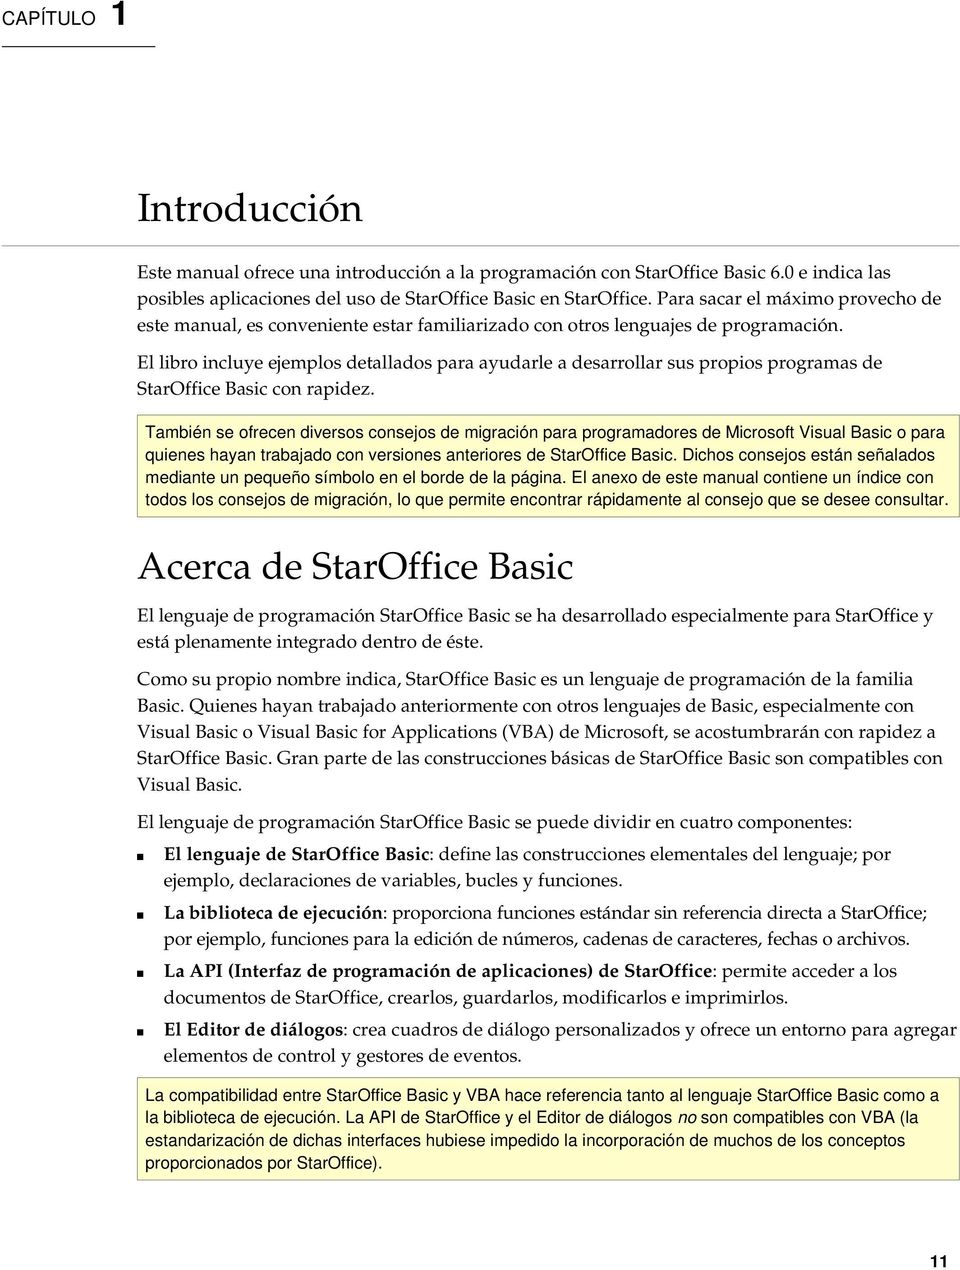 El libro incluye ejemplos detallados para ayudarle a desarrollar sus propios programas de StarOffice Basic con rapidez.